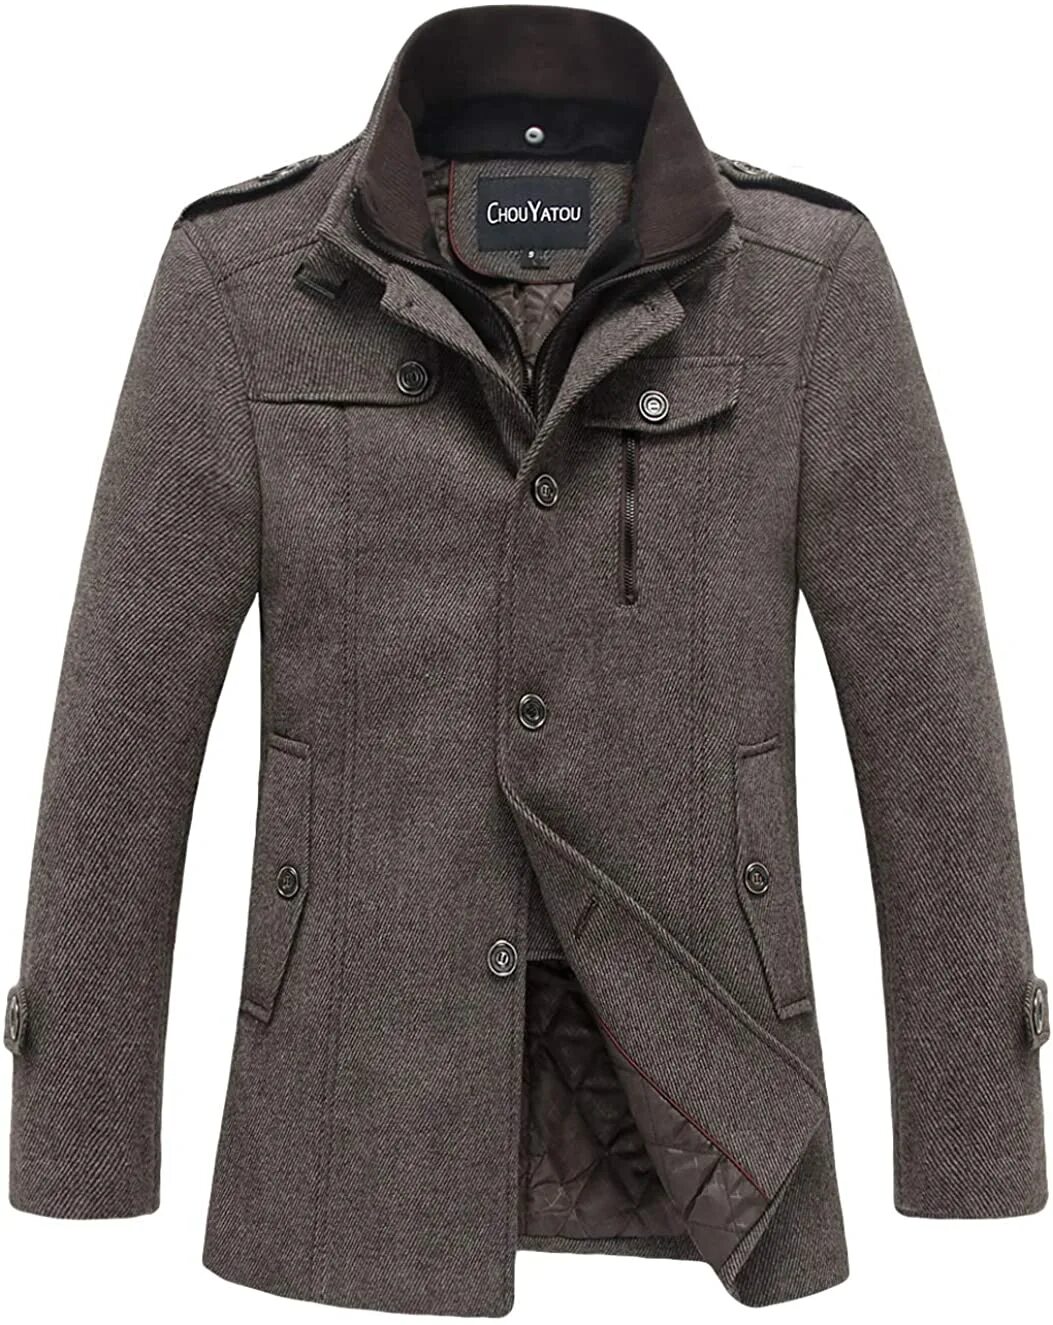 Драповая куртка мужская. Wool Blend Coat пальто мужское\. Остин пальто мужское драповое. Полупальто мужское зимнее. Пальто мужское зимнее.